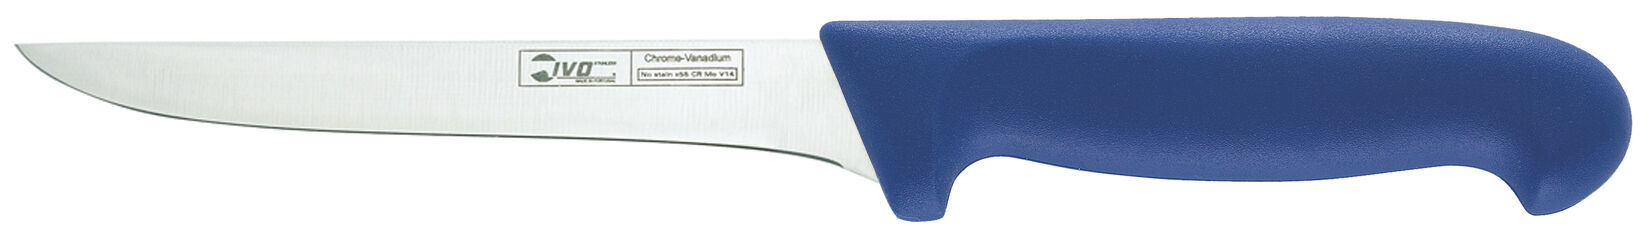 Нож филейный гибкий ручка синяя, IVO 55850.21.07 210мм